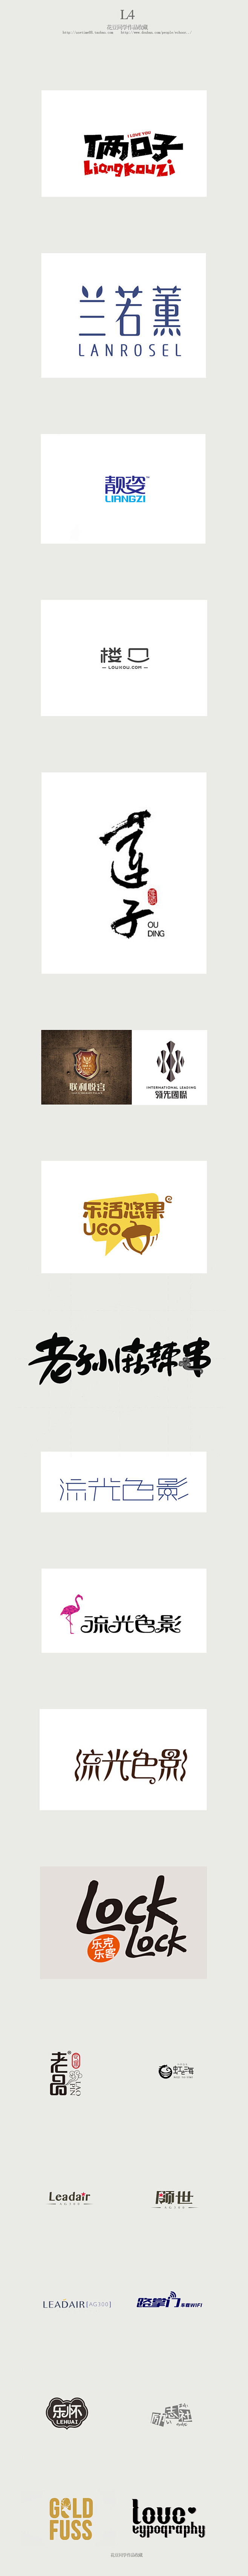 L4—logo：俩口子、兰若薰、靓姿、楼...